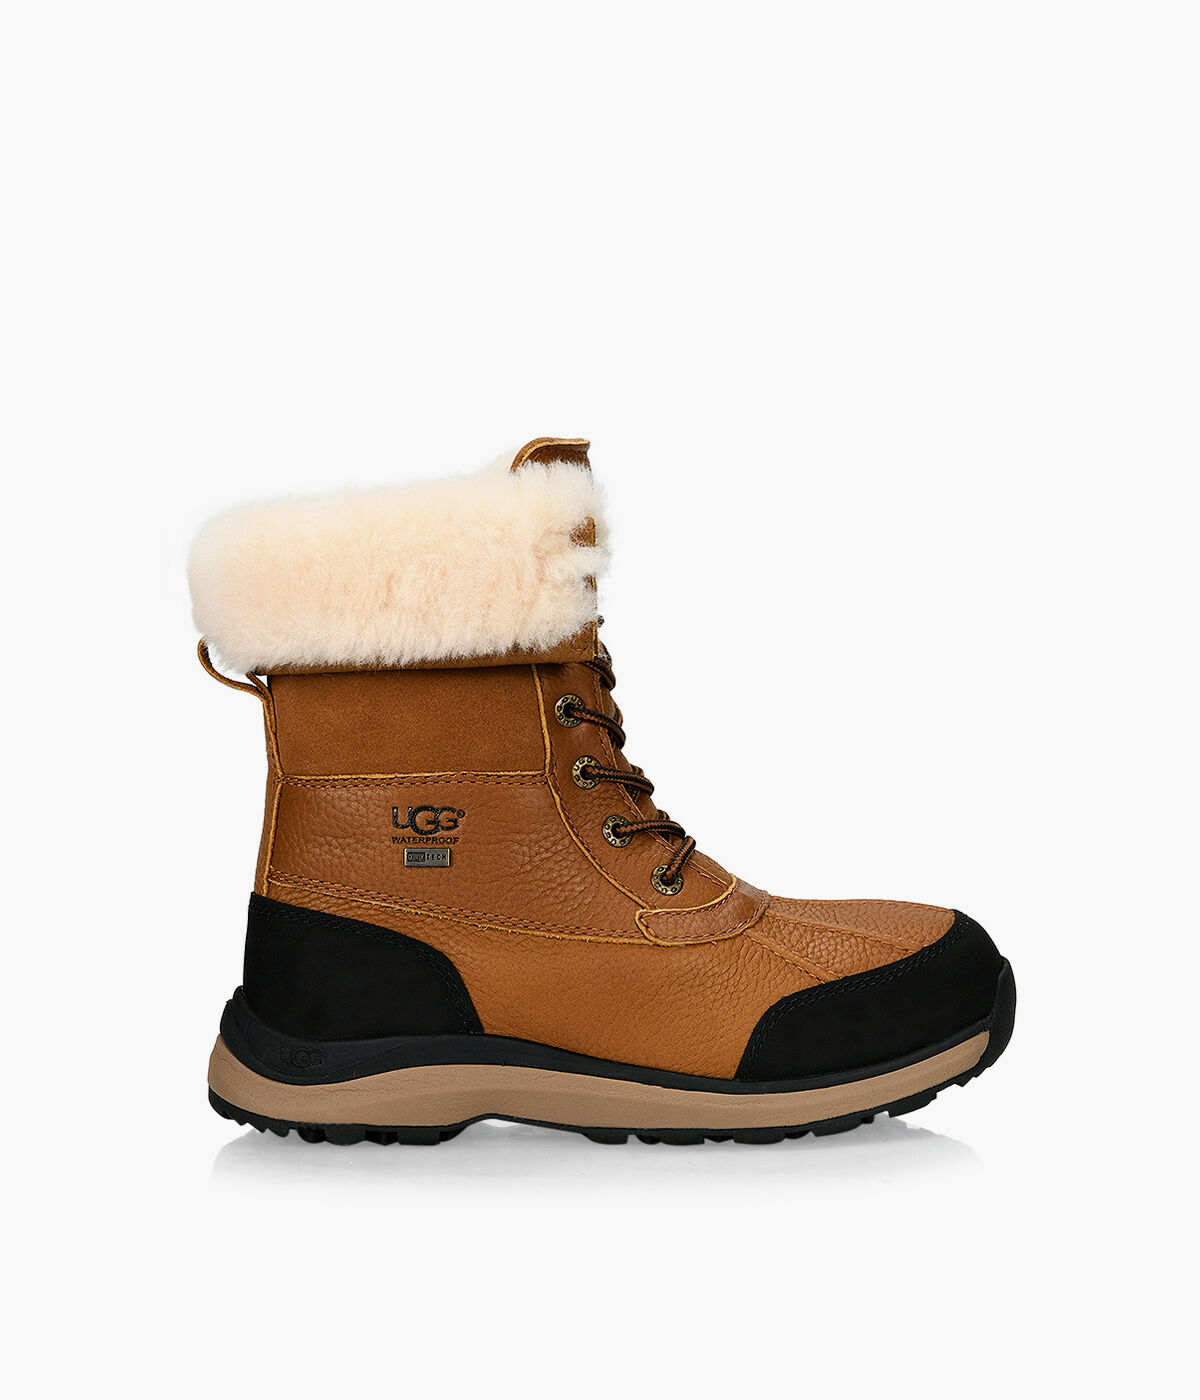 ugg adirondack boots on sale